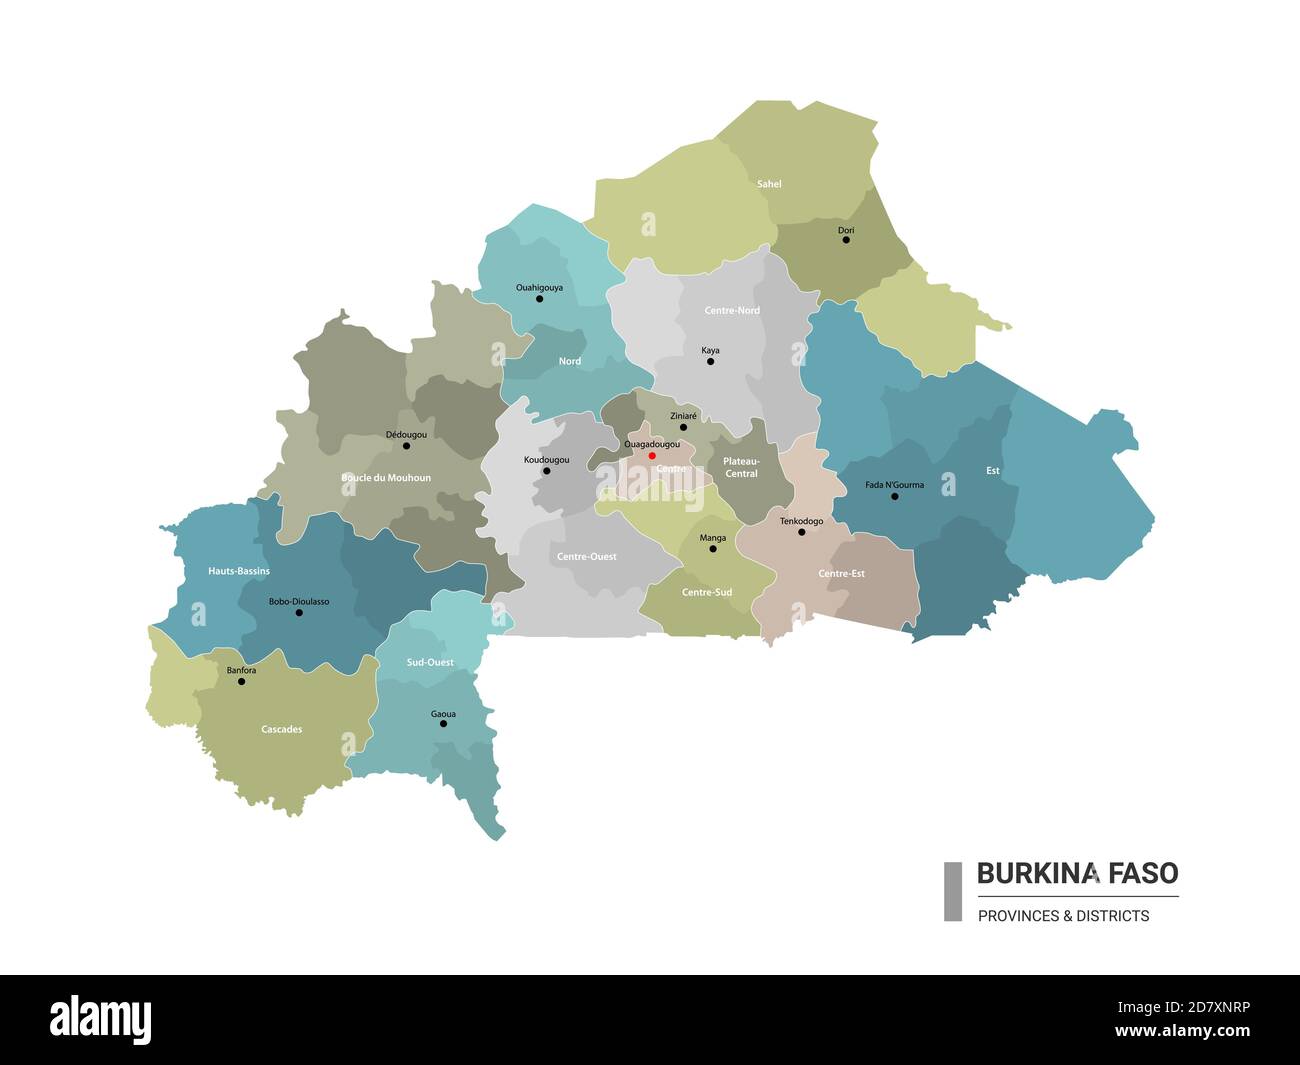 Burkina Faso higt Mappa dettagliata con suddivisioni. Mappa amministrativa del Burkina Faso con il nome dei distretti e delle città, colorata dagli stati e dall'amministrazione Illustrazione Vettoriale